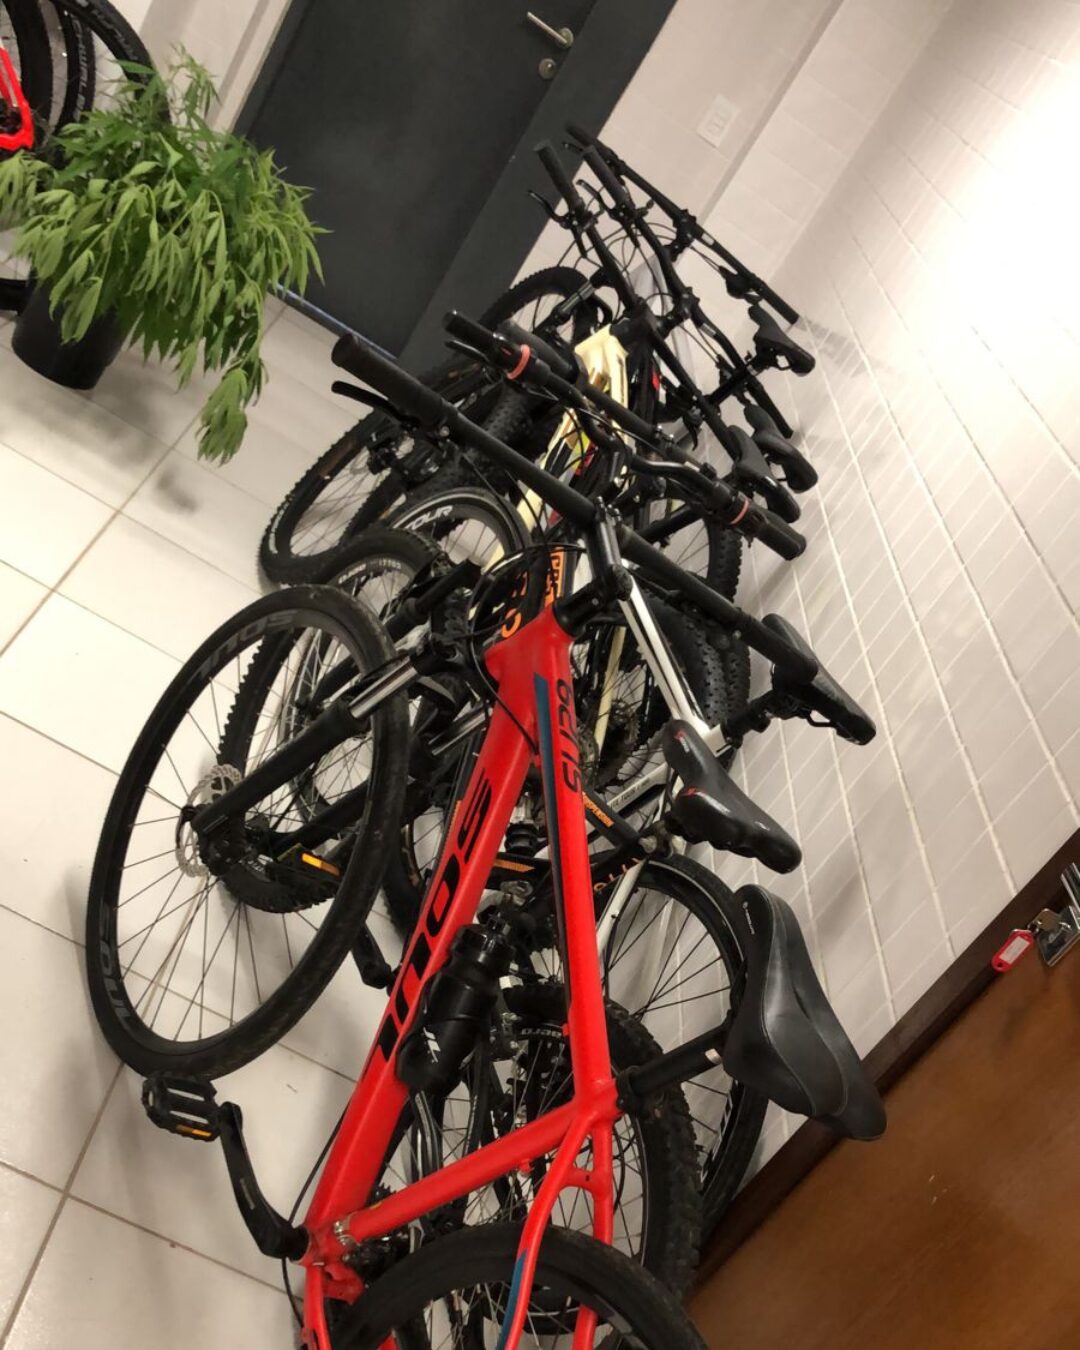 Onze das trinta bicicletas furtadas na semana passada em Curitiba foram encontradas no Jardim Condor